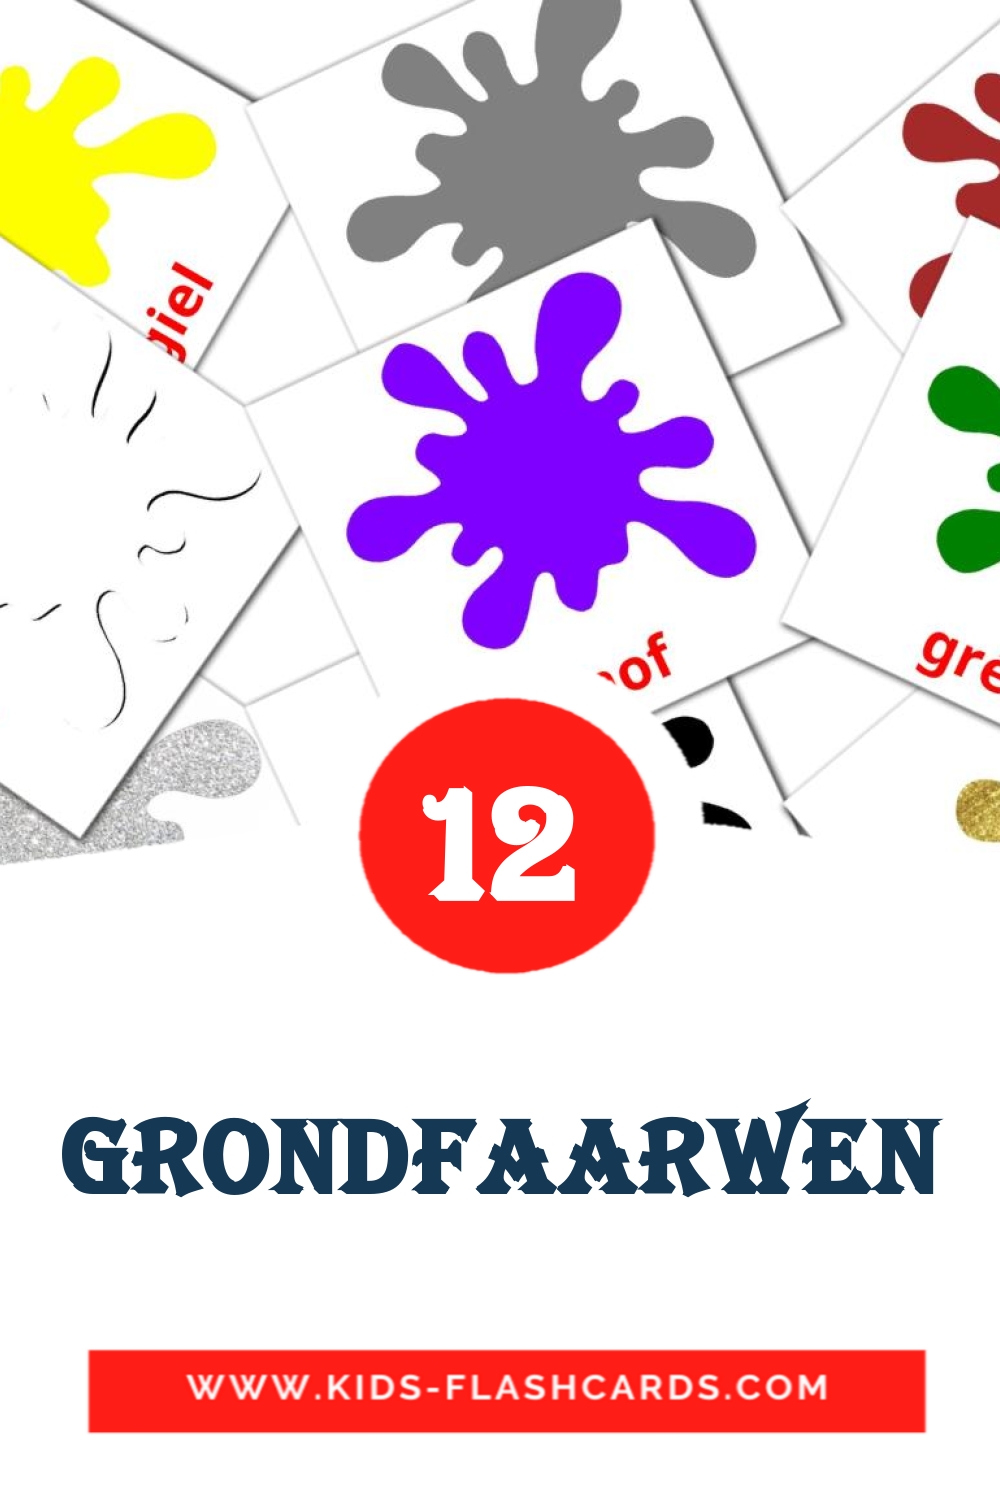 Grondfaarwen на люксембургском для Детского Сада (12 карточек)